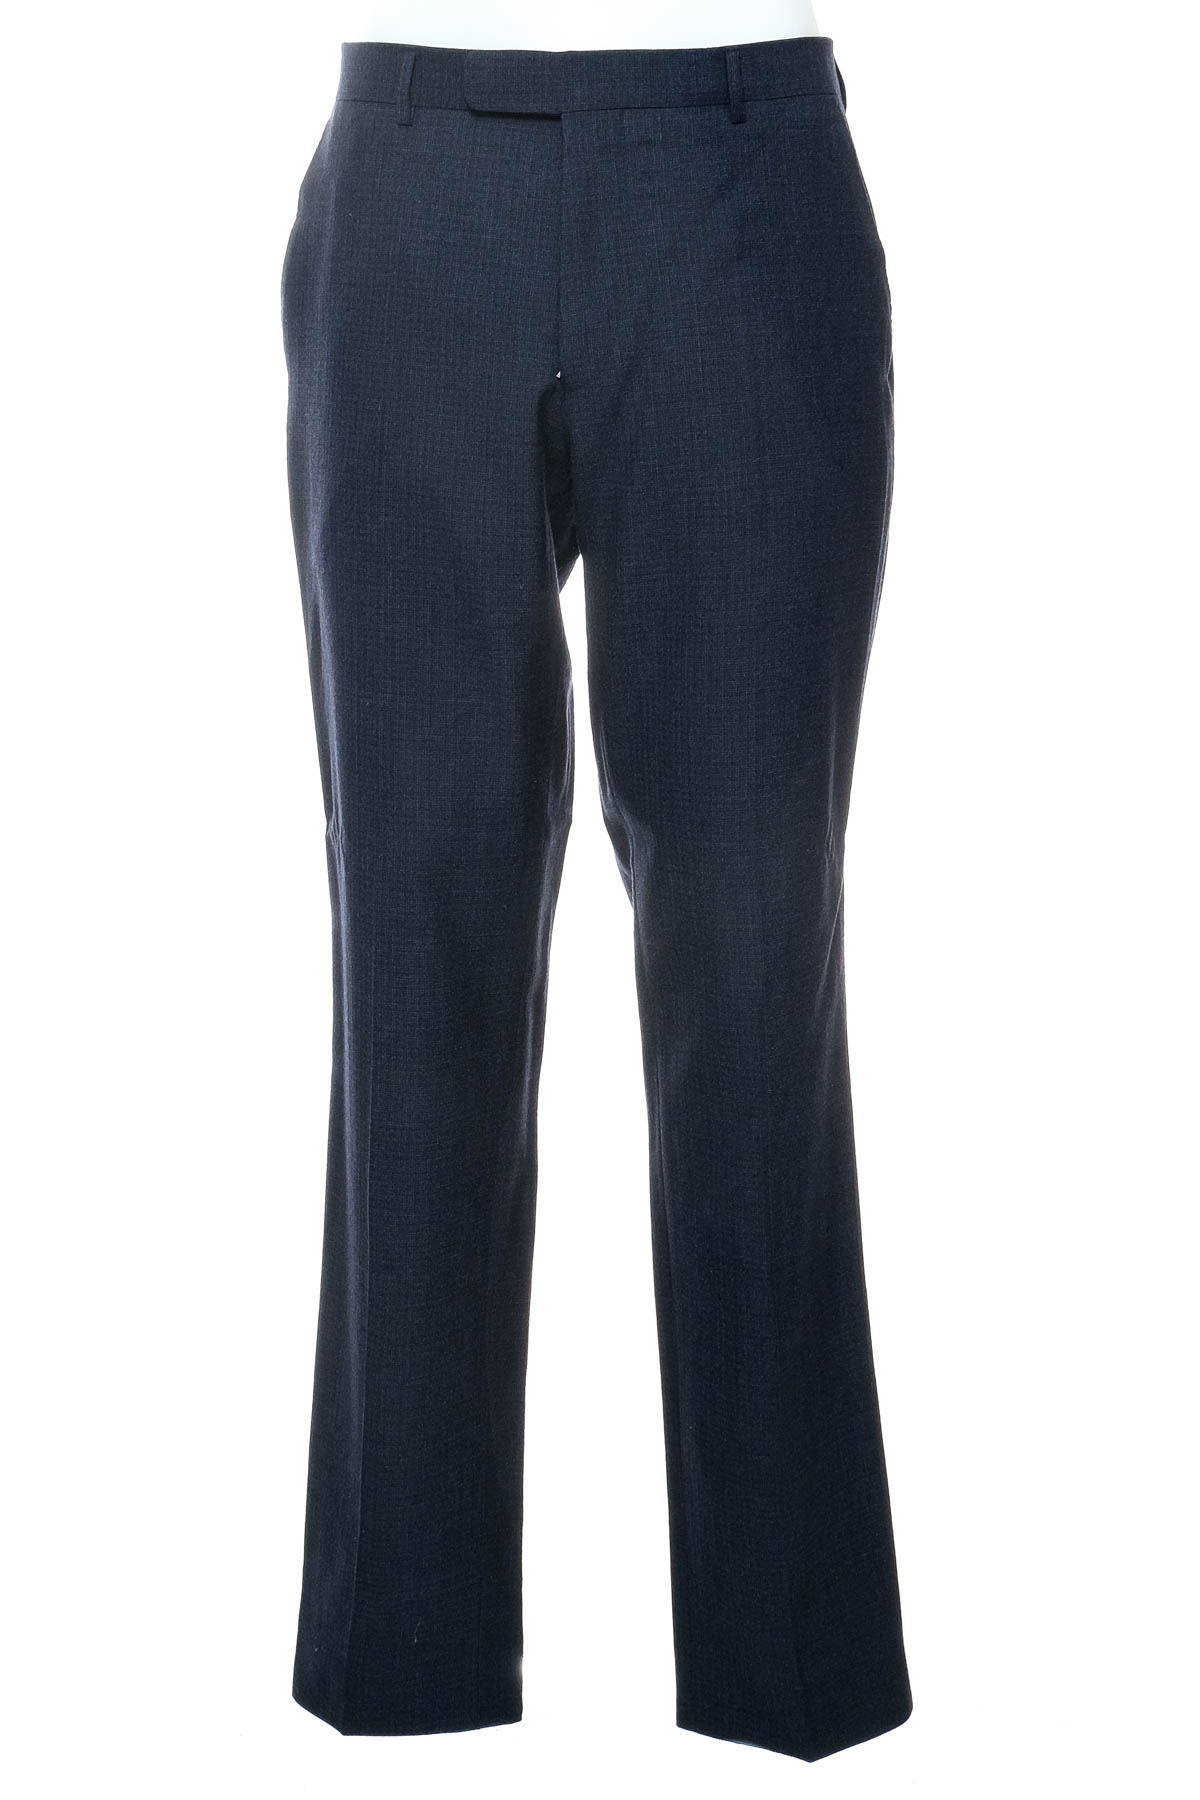 Ανδρικό παντελόνι - HUGO BOSS - 0